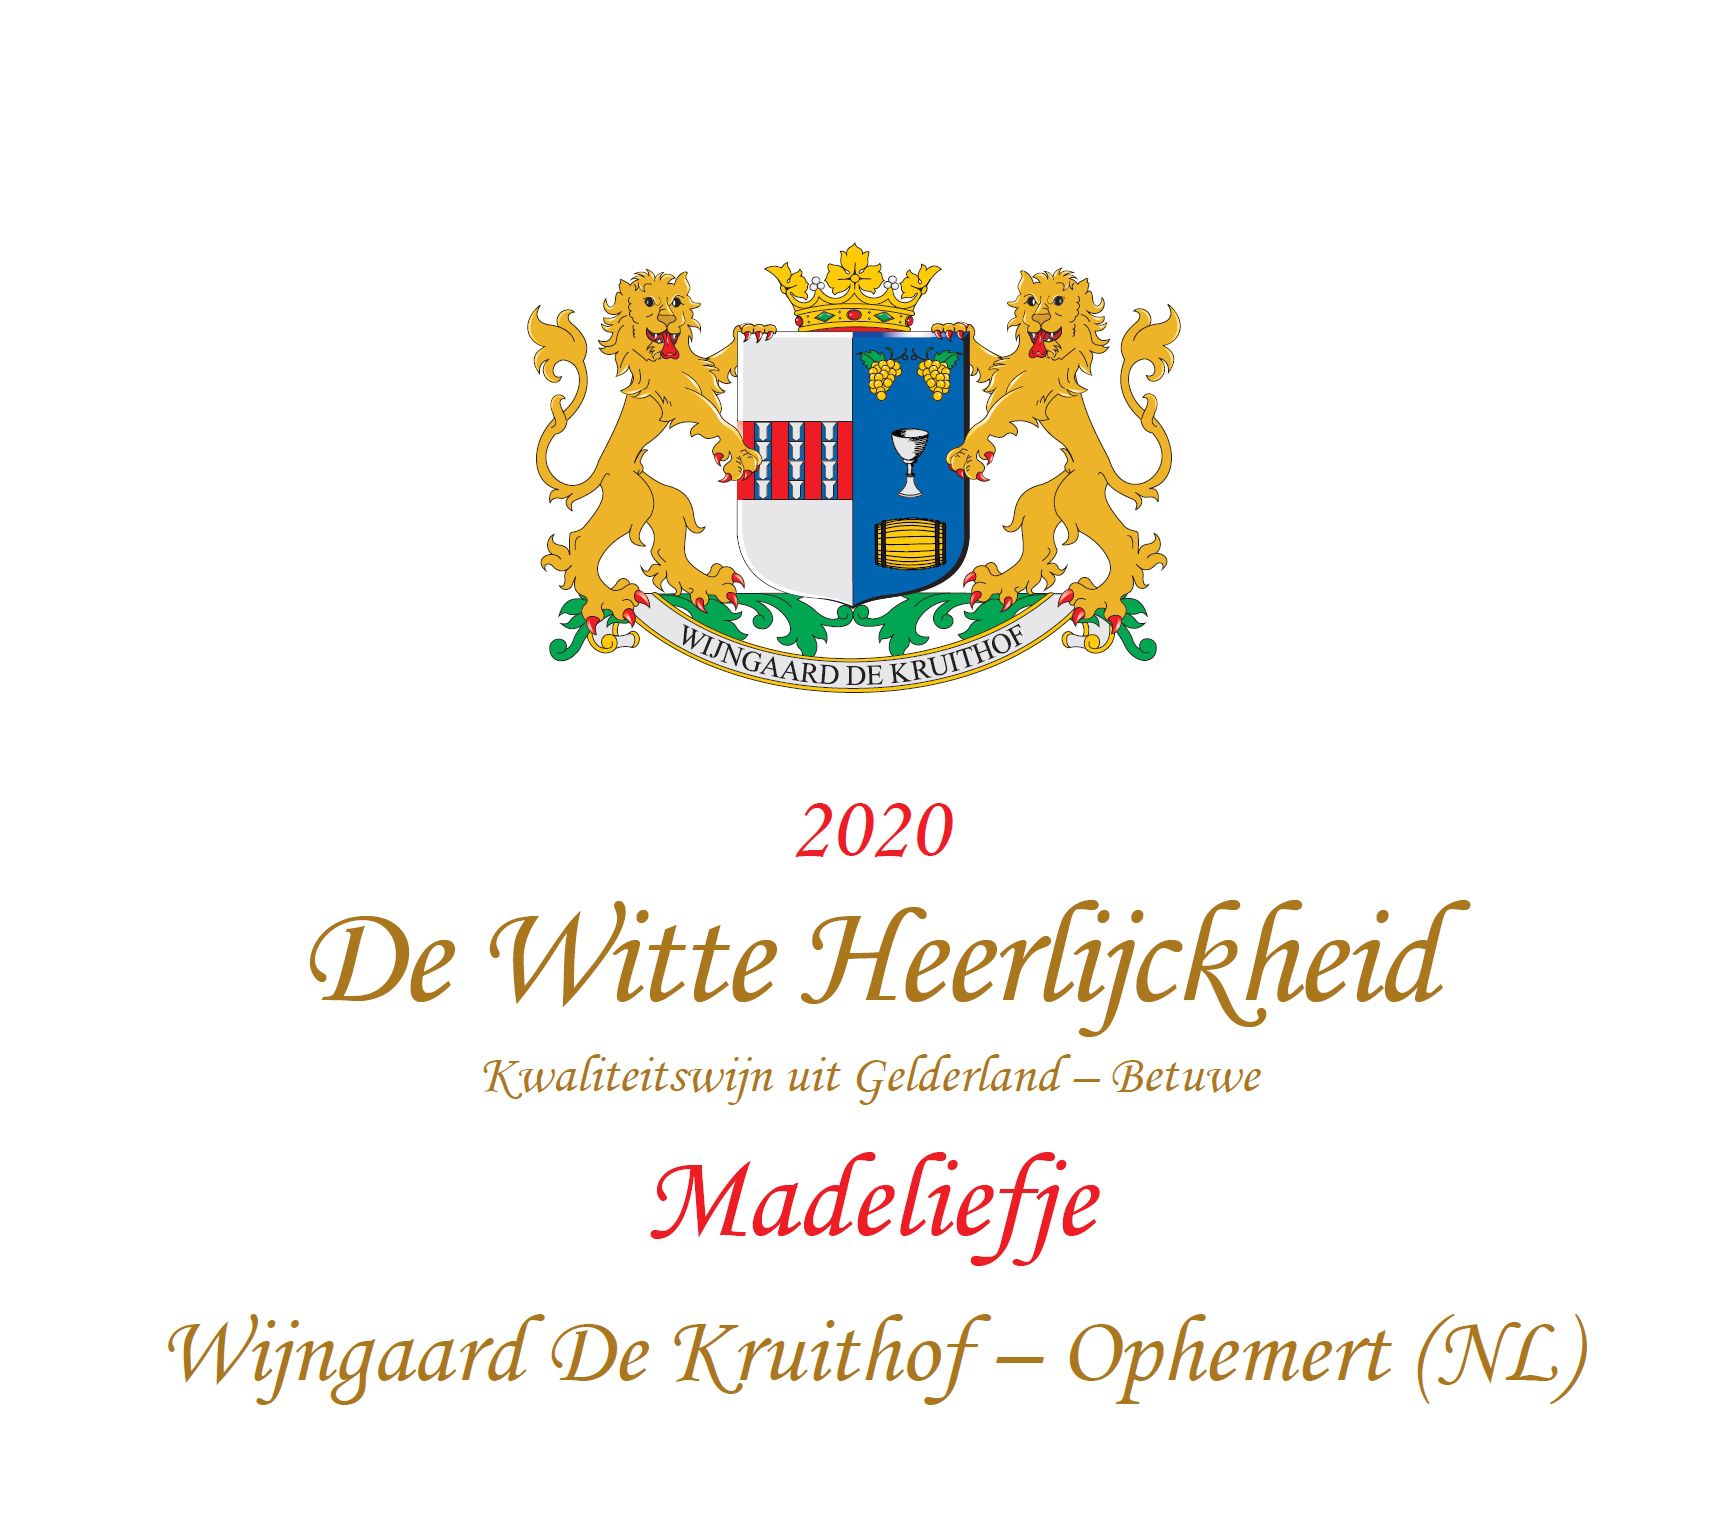 Wijngaard De Kruithof - De Witte Heerlijckheid Madeliefje